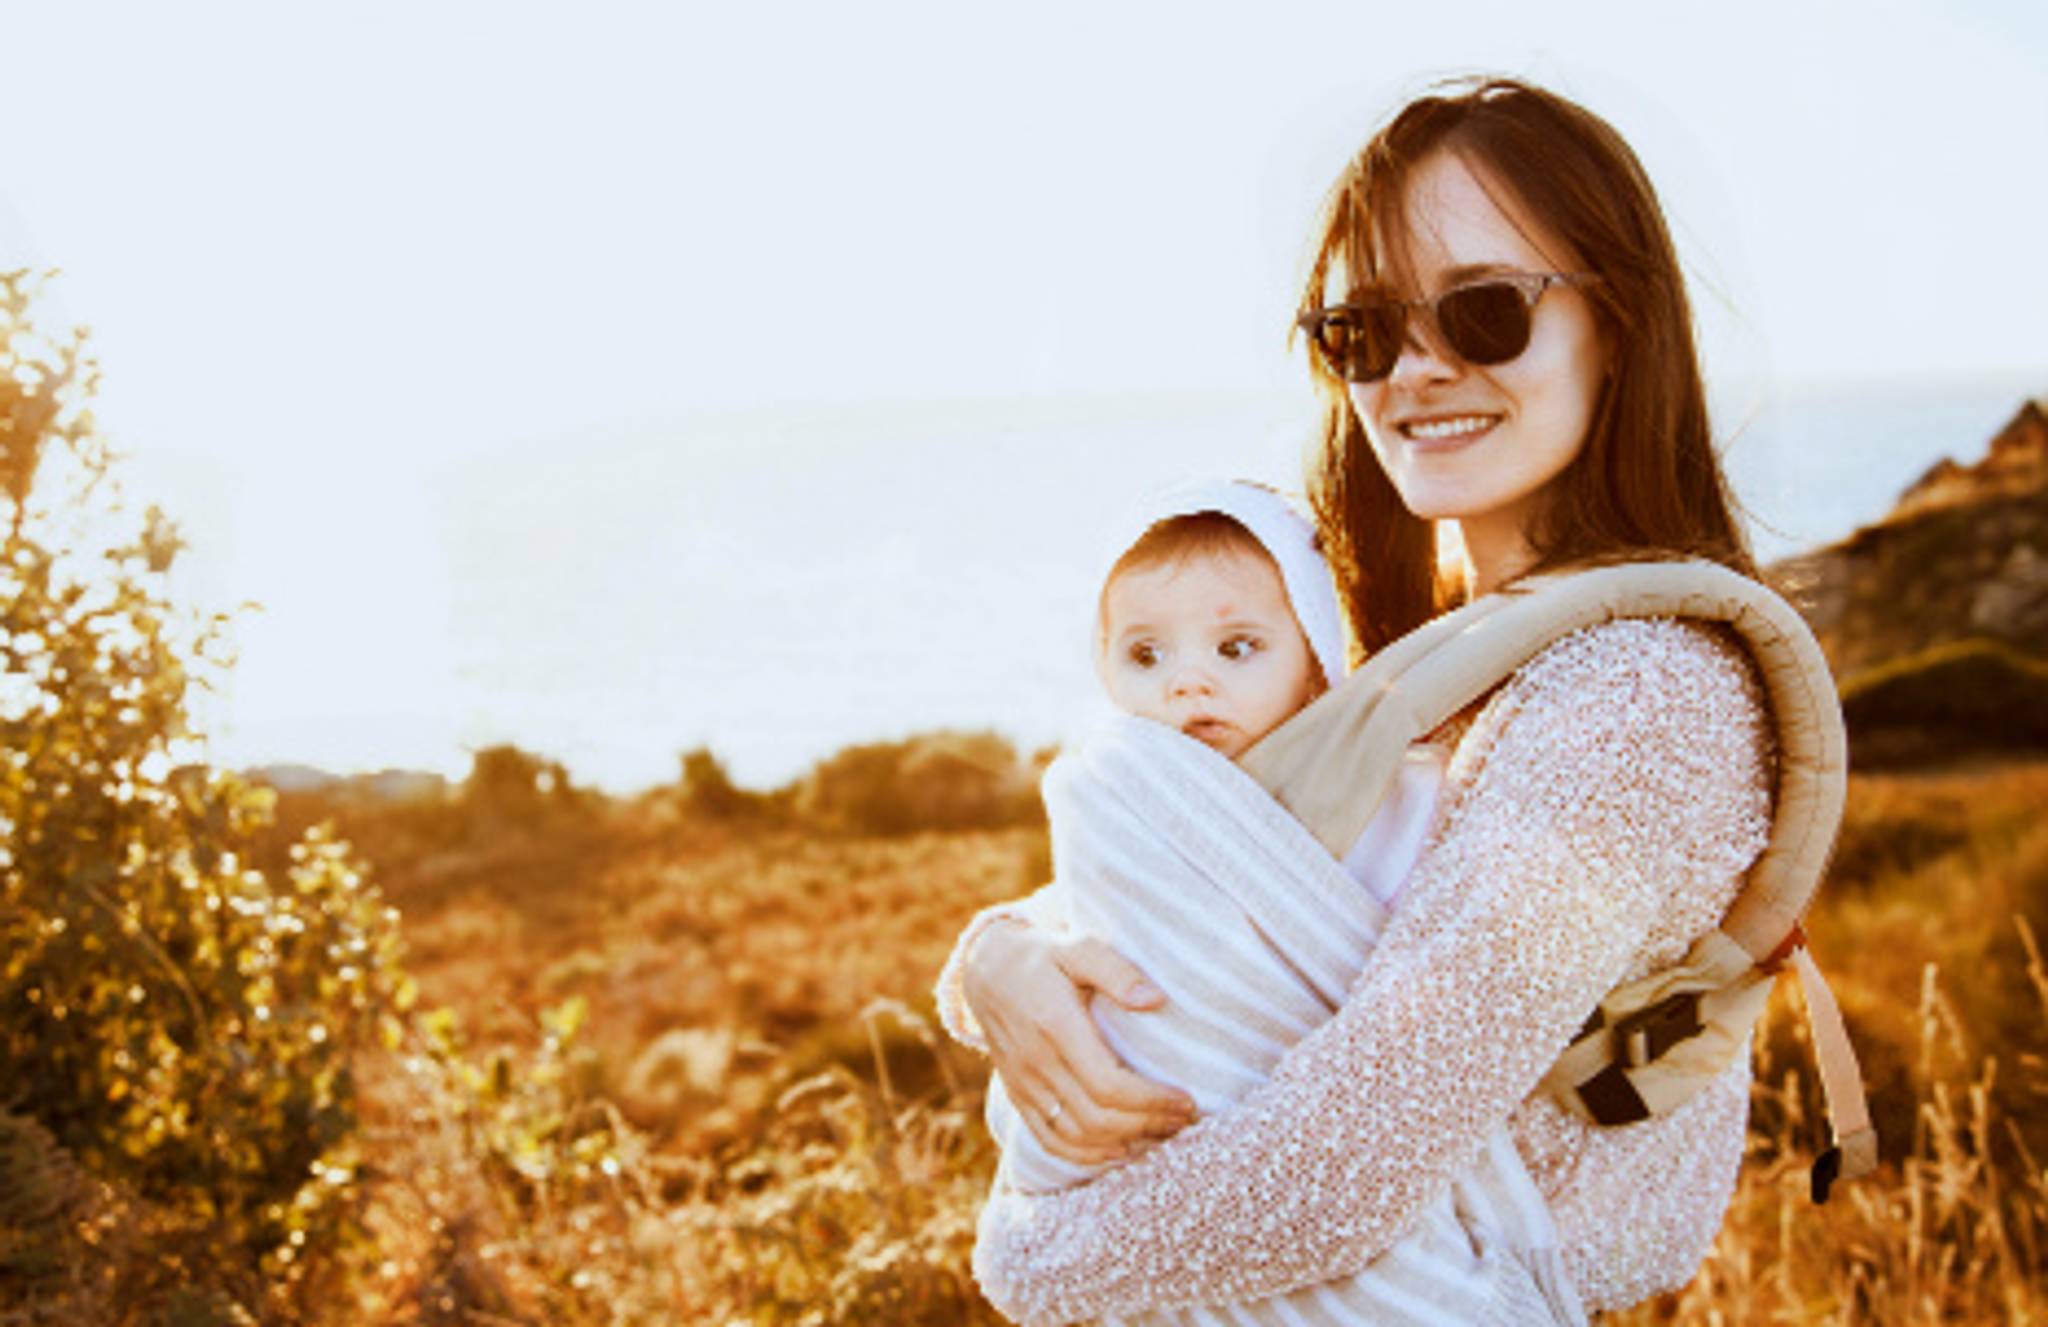 EggBanxx: financing fertility to delay motherhood